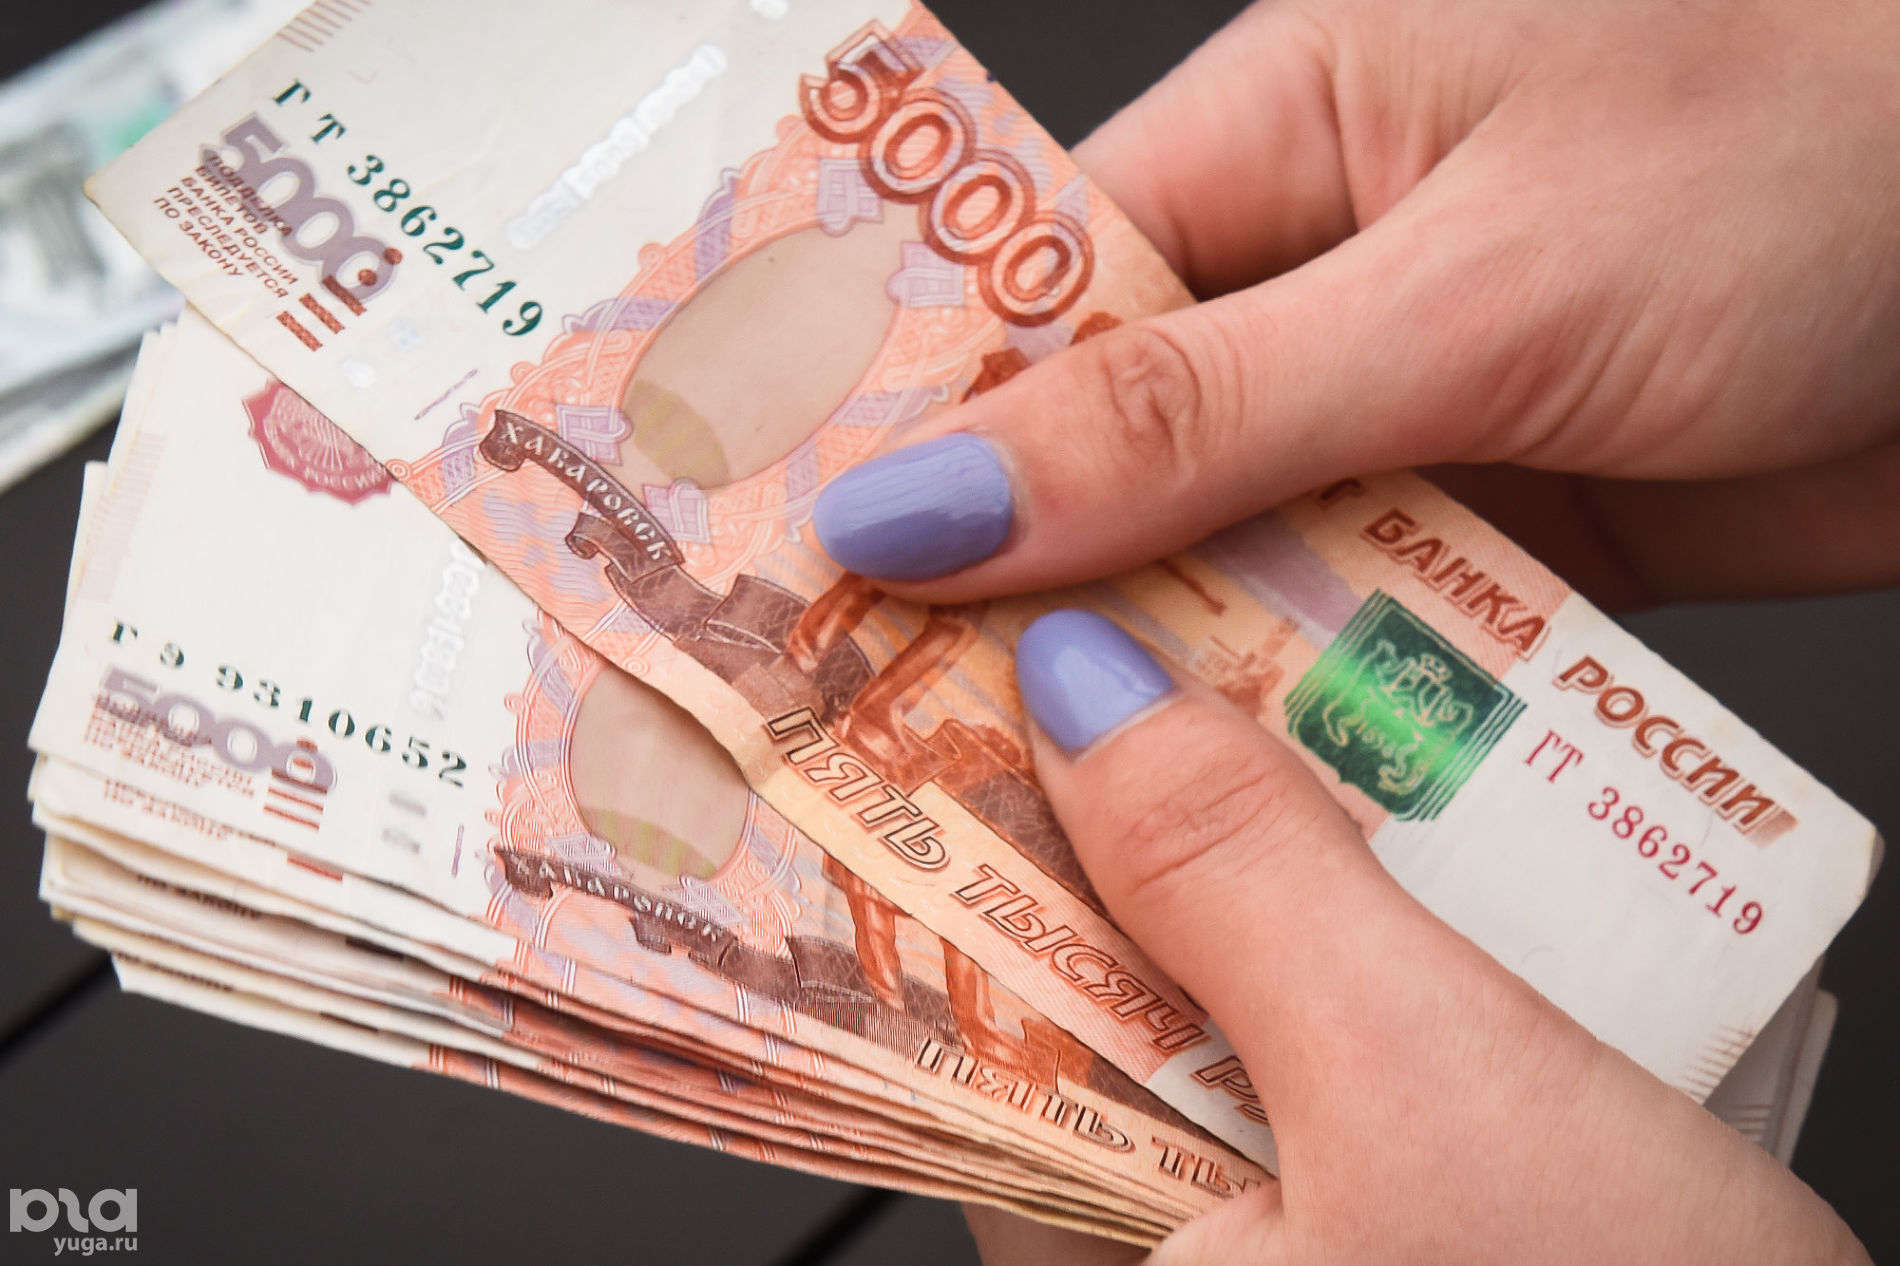 Сотрудница брянского филиала крупной компании украла из кассы 300 тысяч рублей